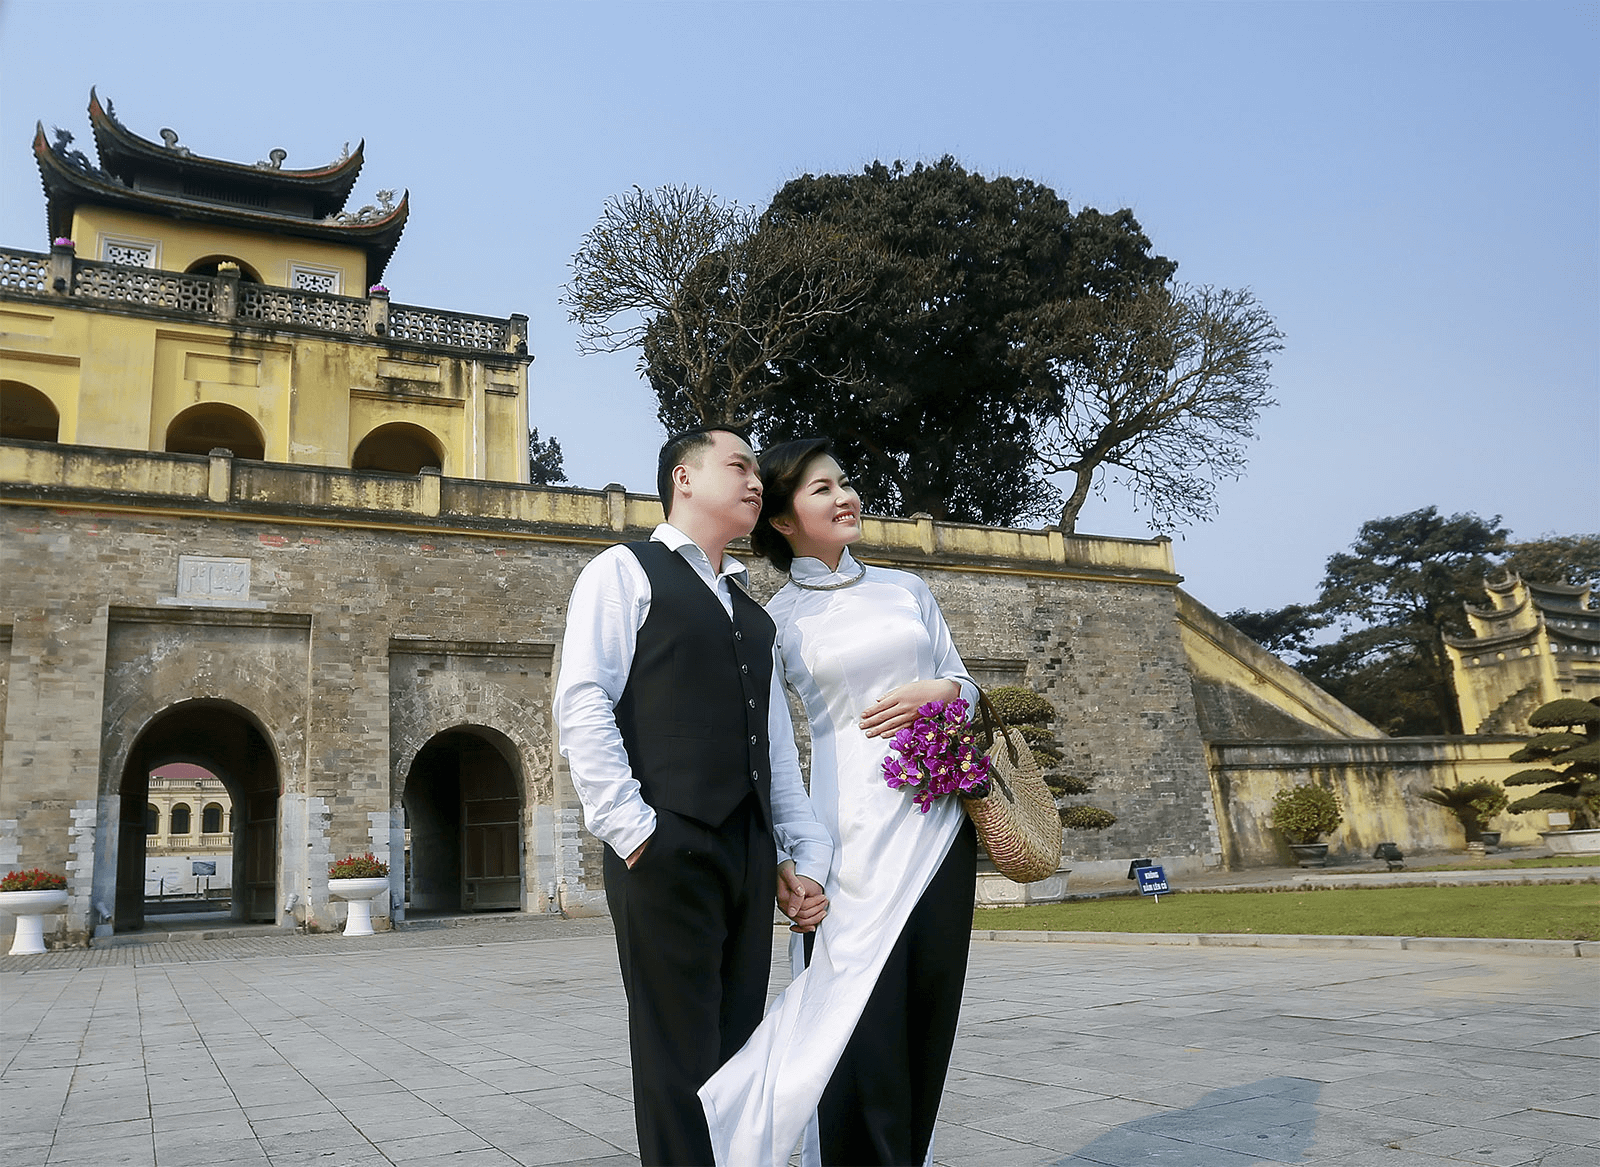 Hoàng thành Thăng Long là lựa chọn tuyệt vời cho những concept chụp ảnh cưới với trang phục truyền thống (Ảnh sưu tầm)